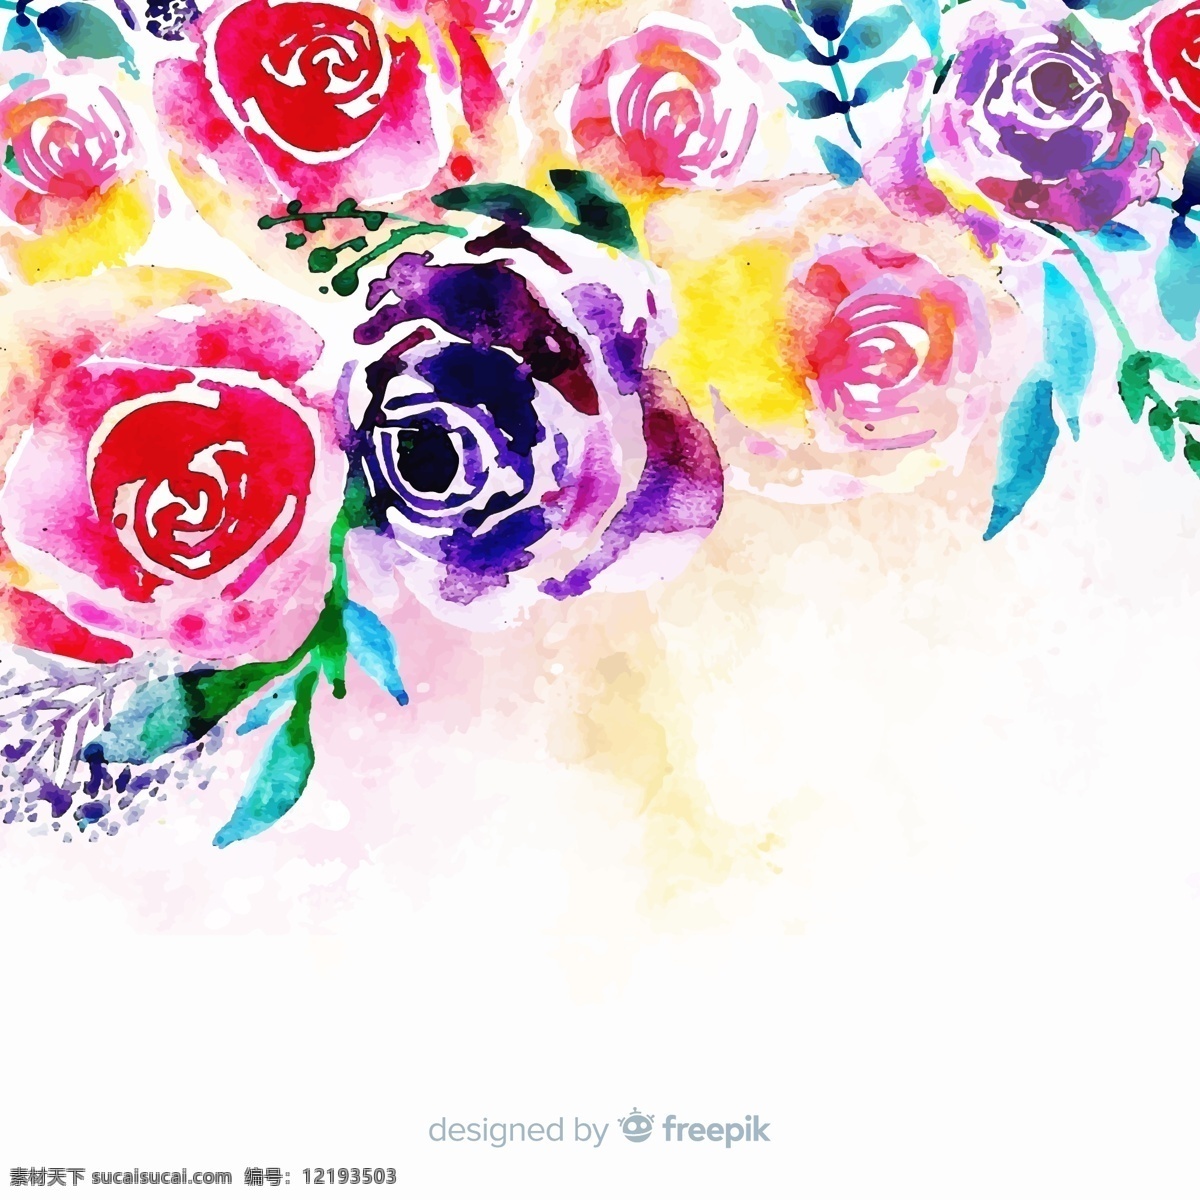 水彩绘多种 颜色玫瑰花 矢量素材 花卉 水彩 玫瑰花 红玫瑰 矢量图 ai格式